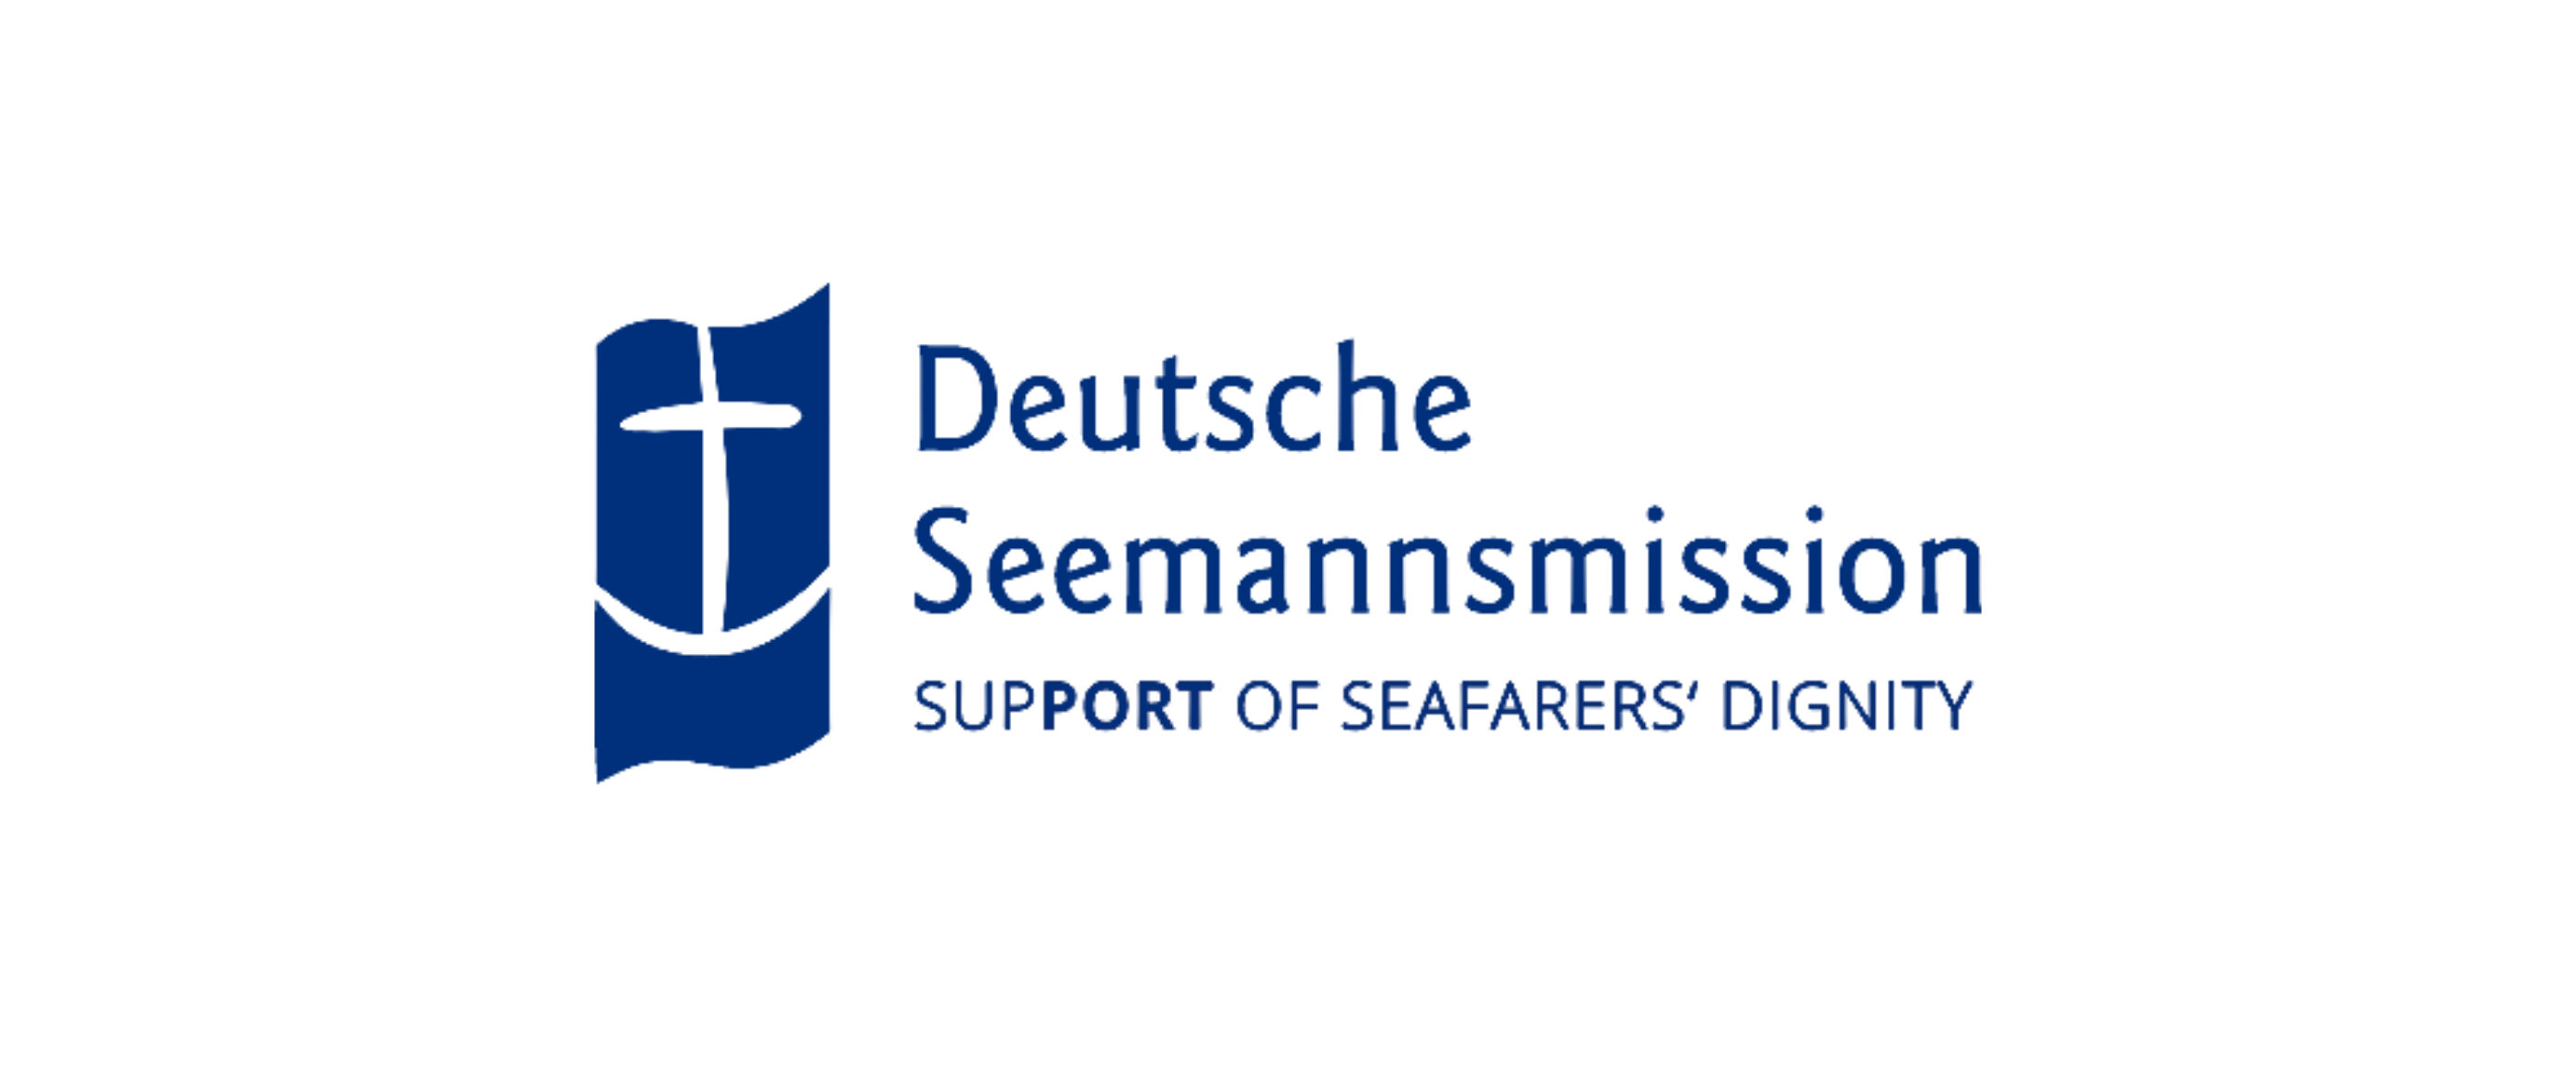 Links ist ein Anker auf blauem Hintergrund zu sehen. Rechts daneben steht in Blau: Deutsche Seemannsmission - Support of Seafarer's Dignity